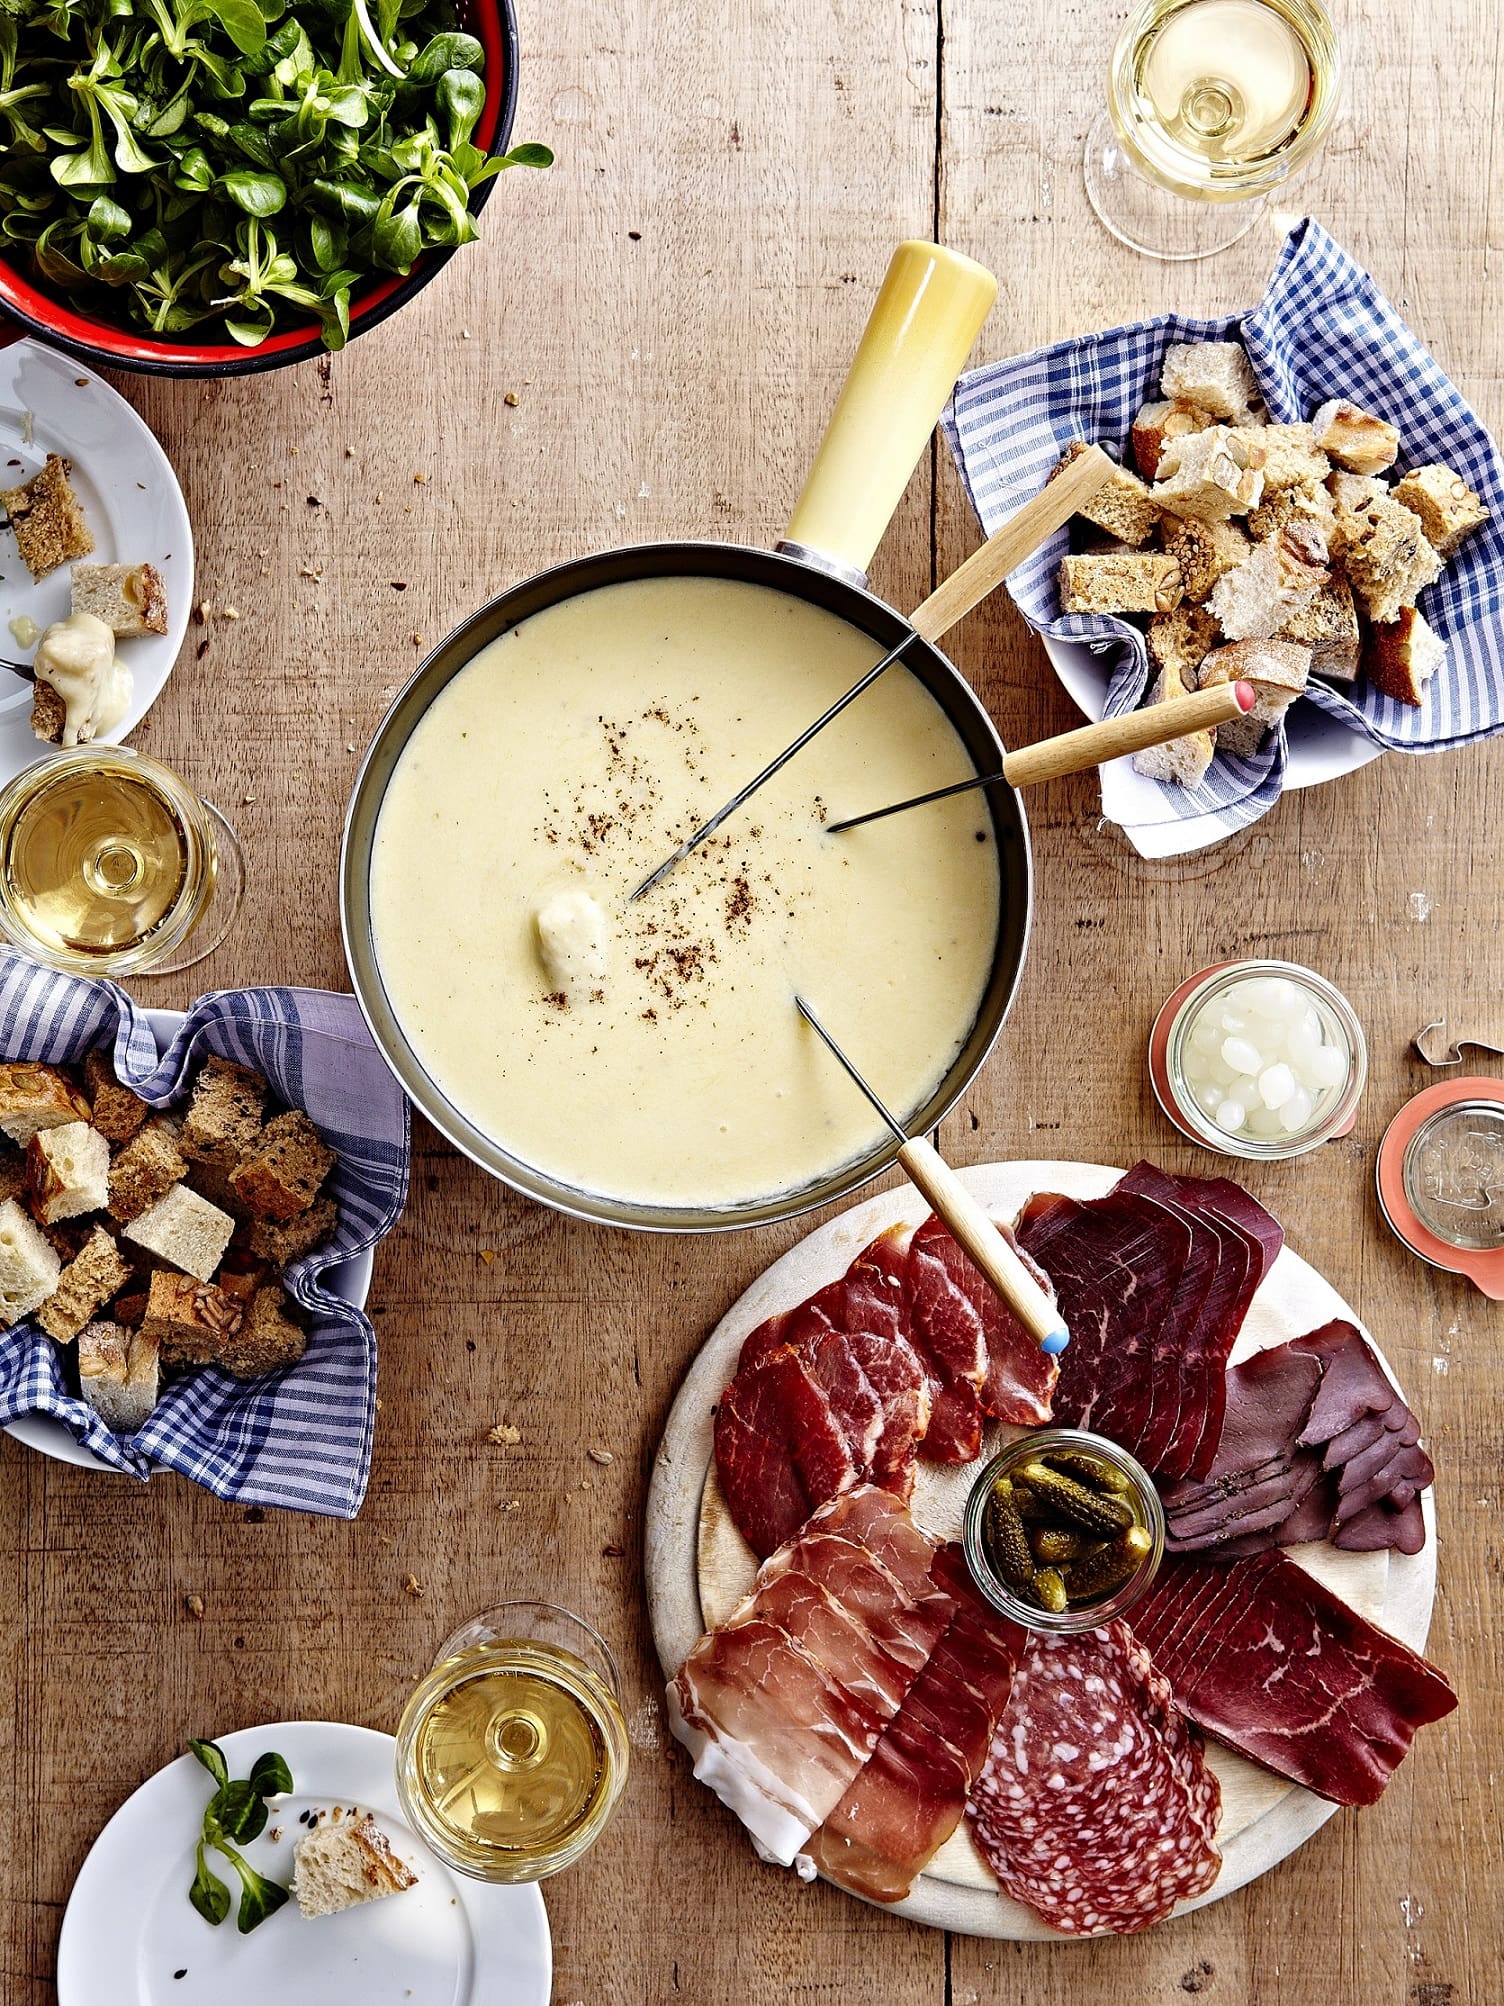 Bring Switzerland in your kitchen with some scrumptious Alpine delicacies!